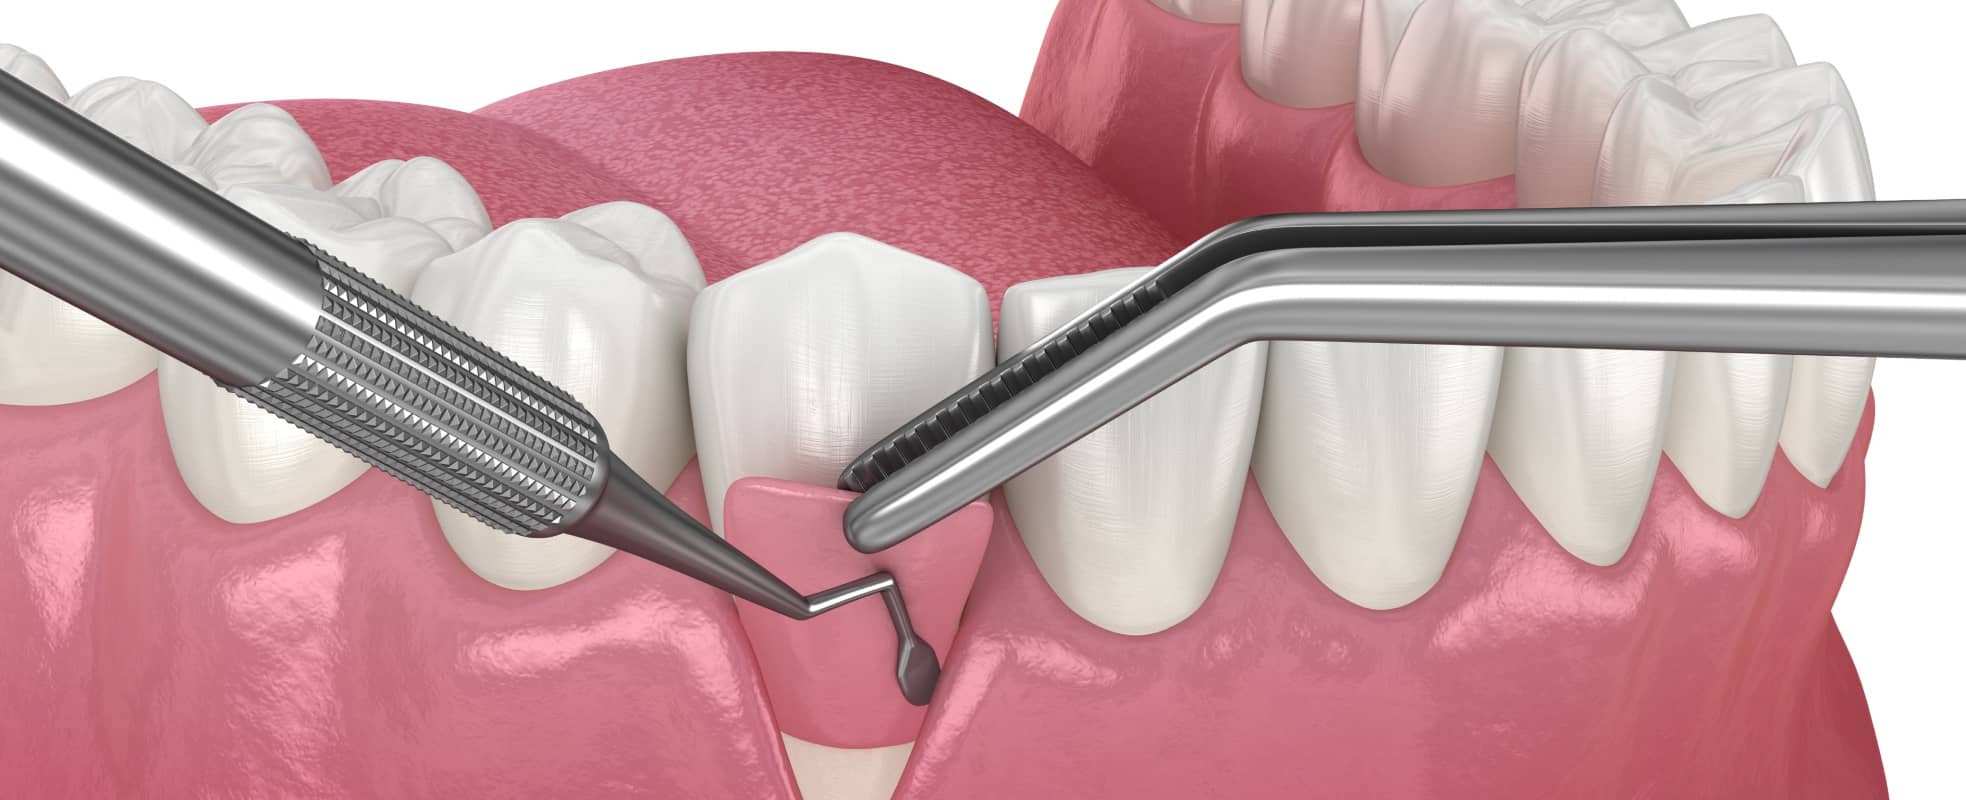 Quand est-ce que la greffe osseuse dentaire est nécessaire pour la pose d'implants dentaires ? | Dr Elhyani | Paris